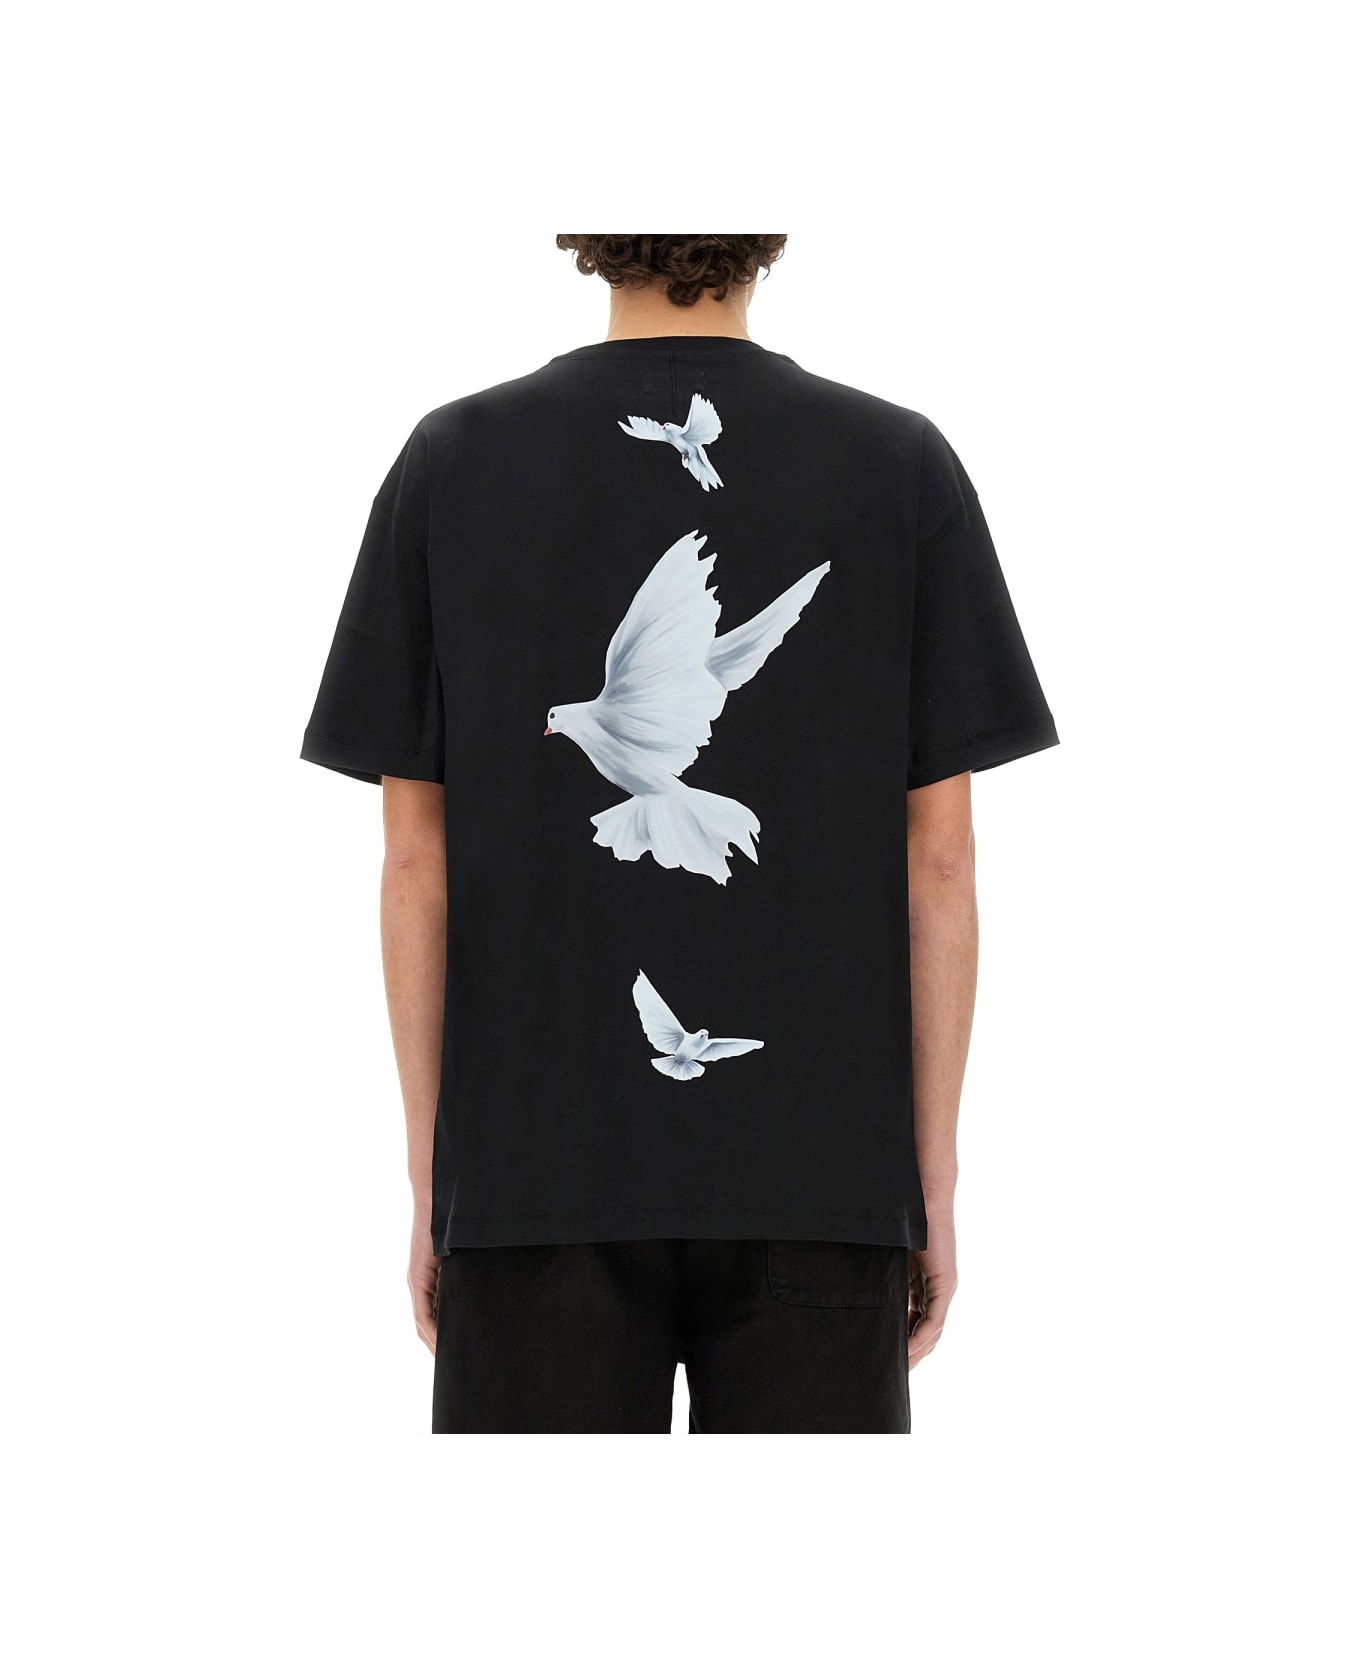 3.Paradis 'freedom' T-shirt - BLACK